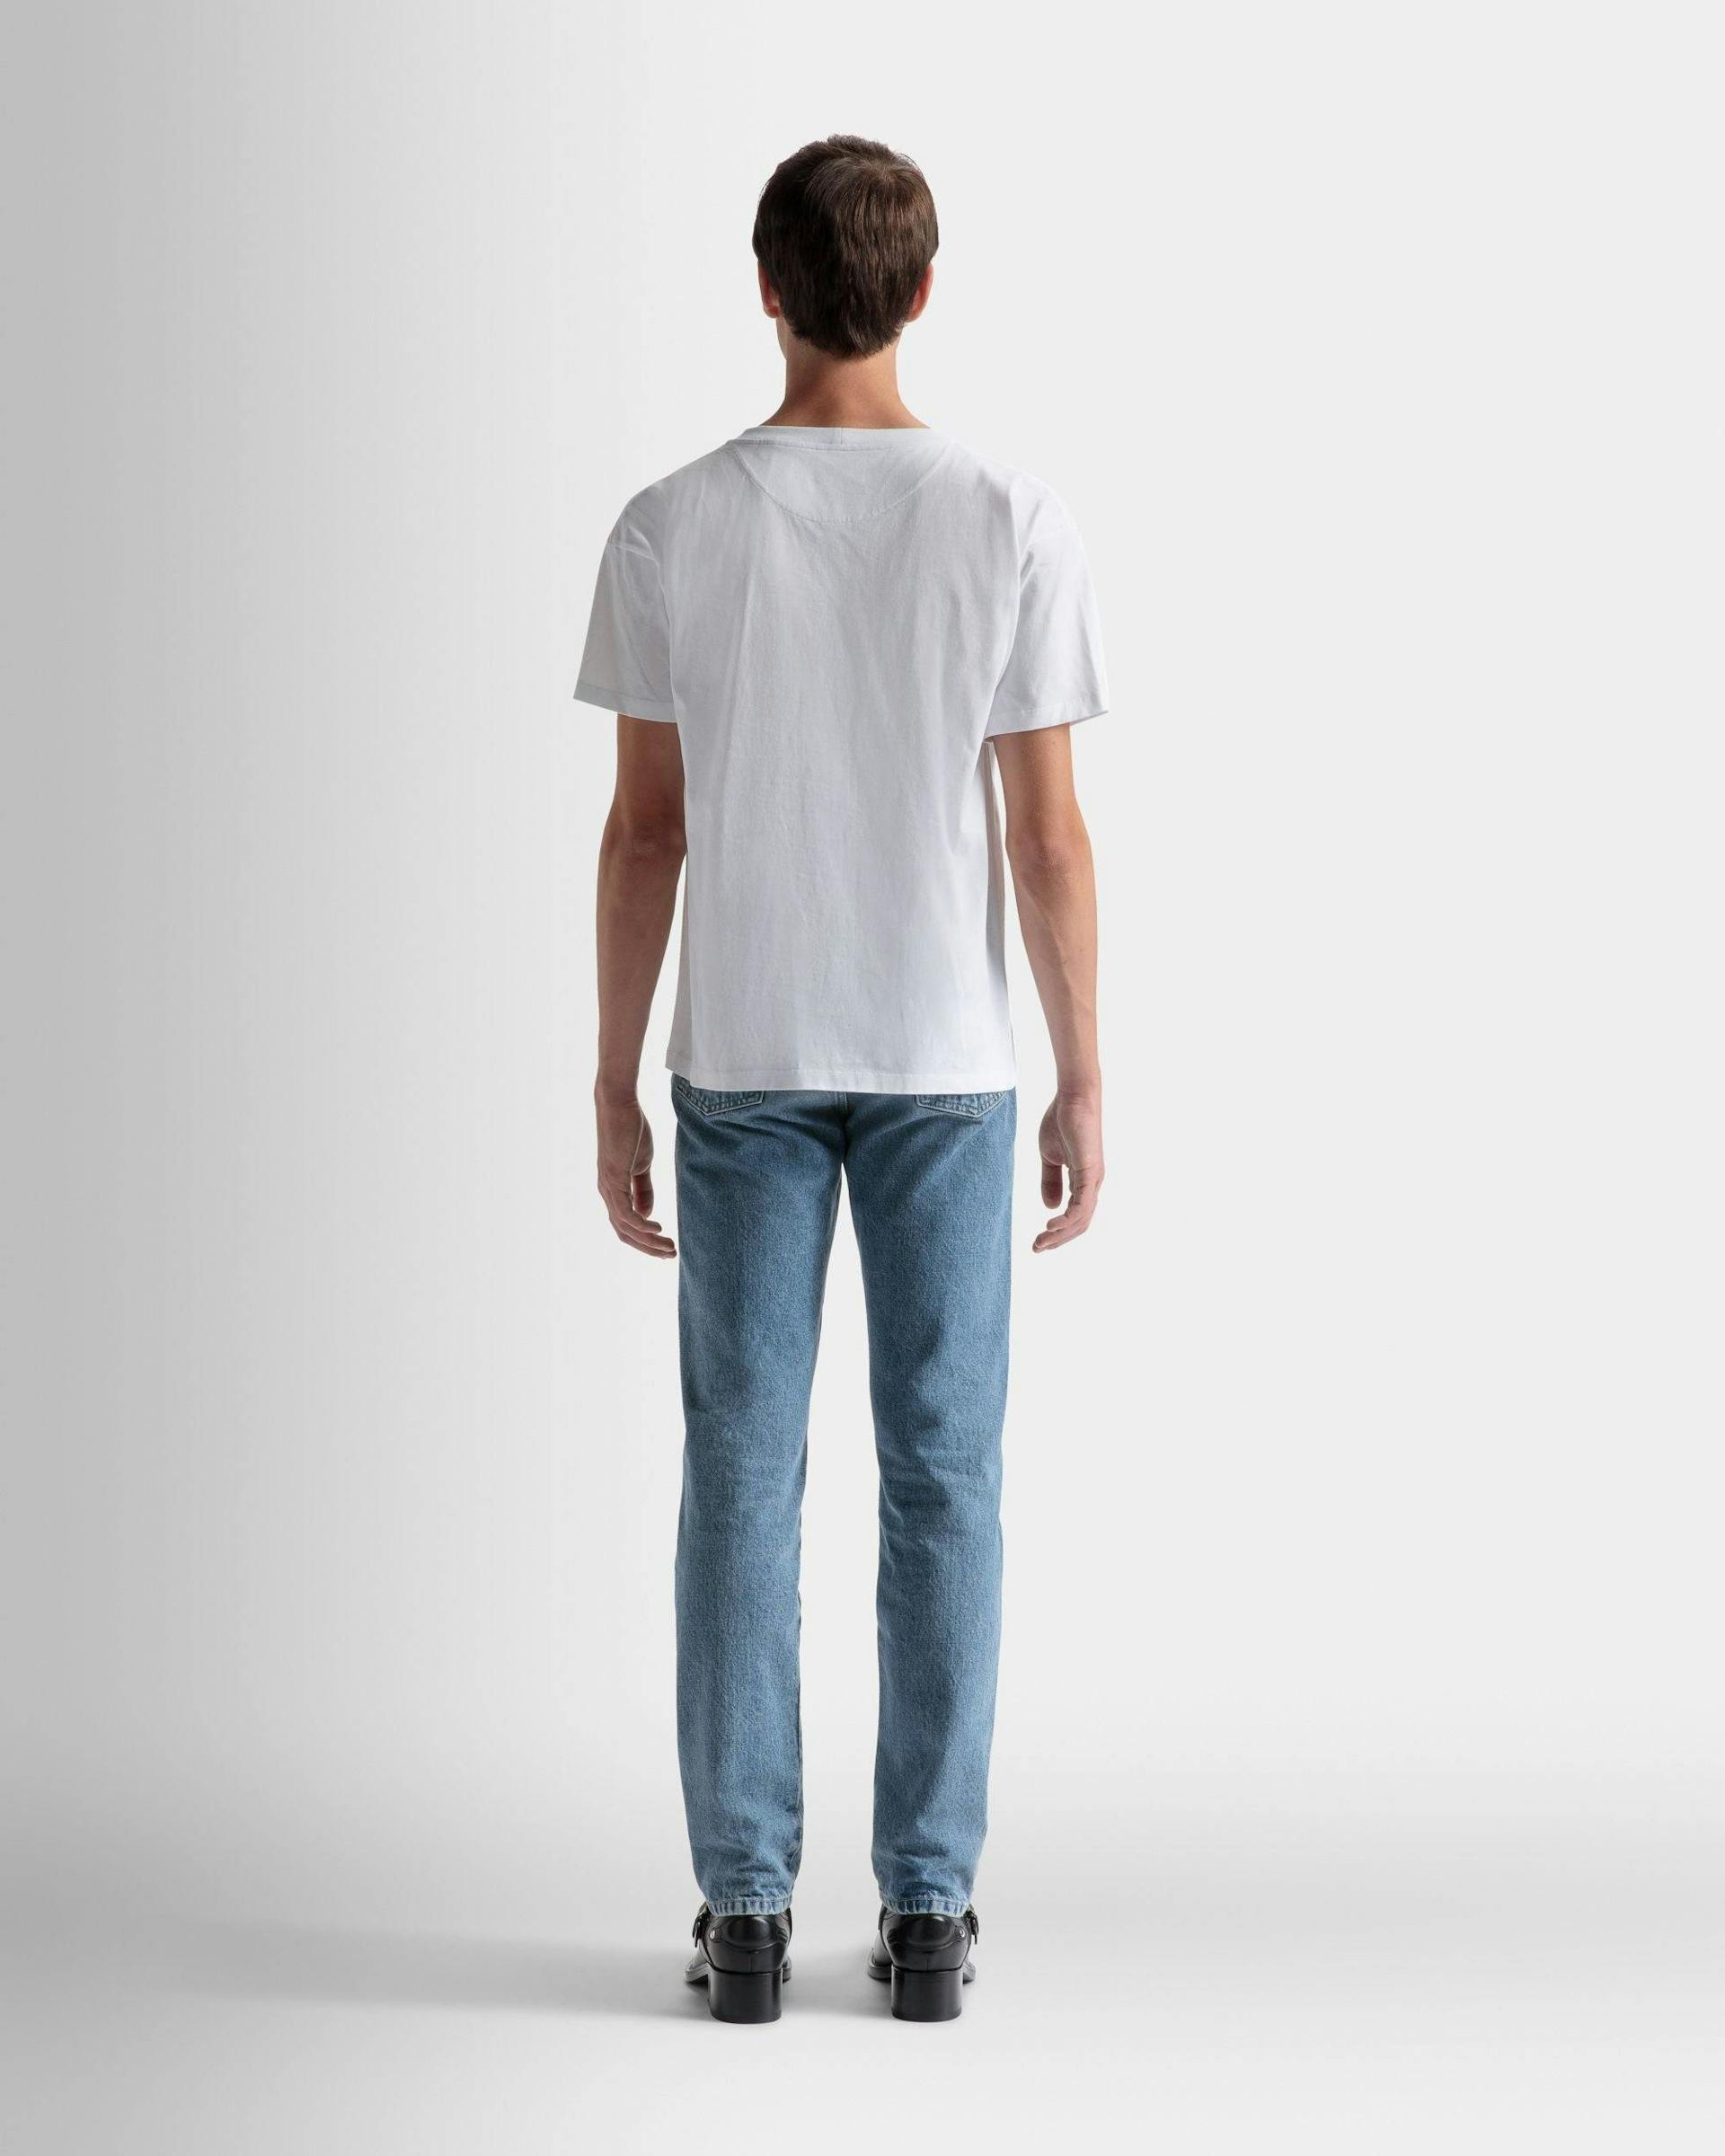 Men's Logo T-Shirt In White Cotton | Bally | On Model Back